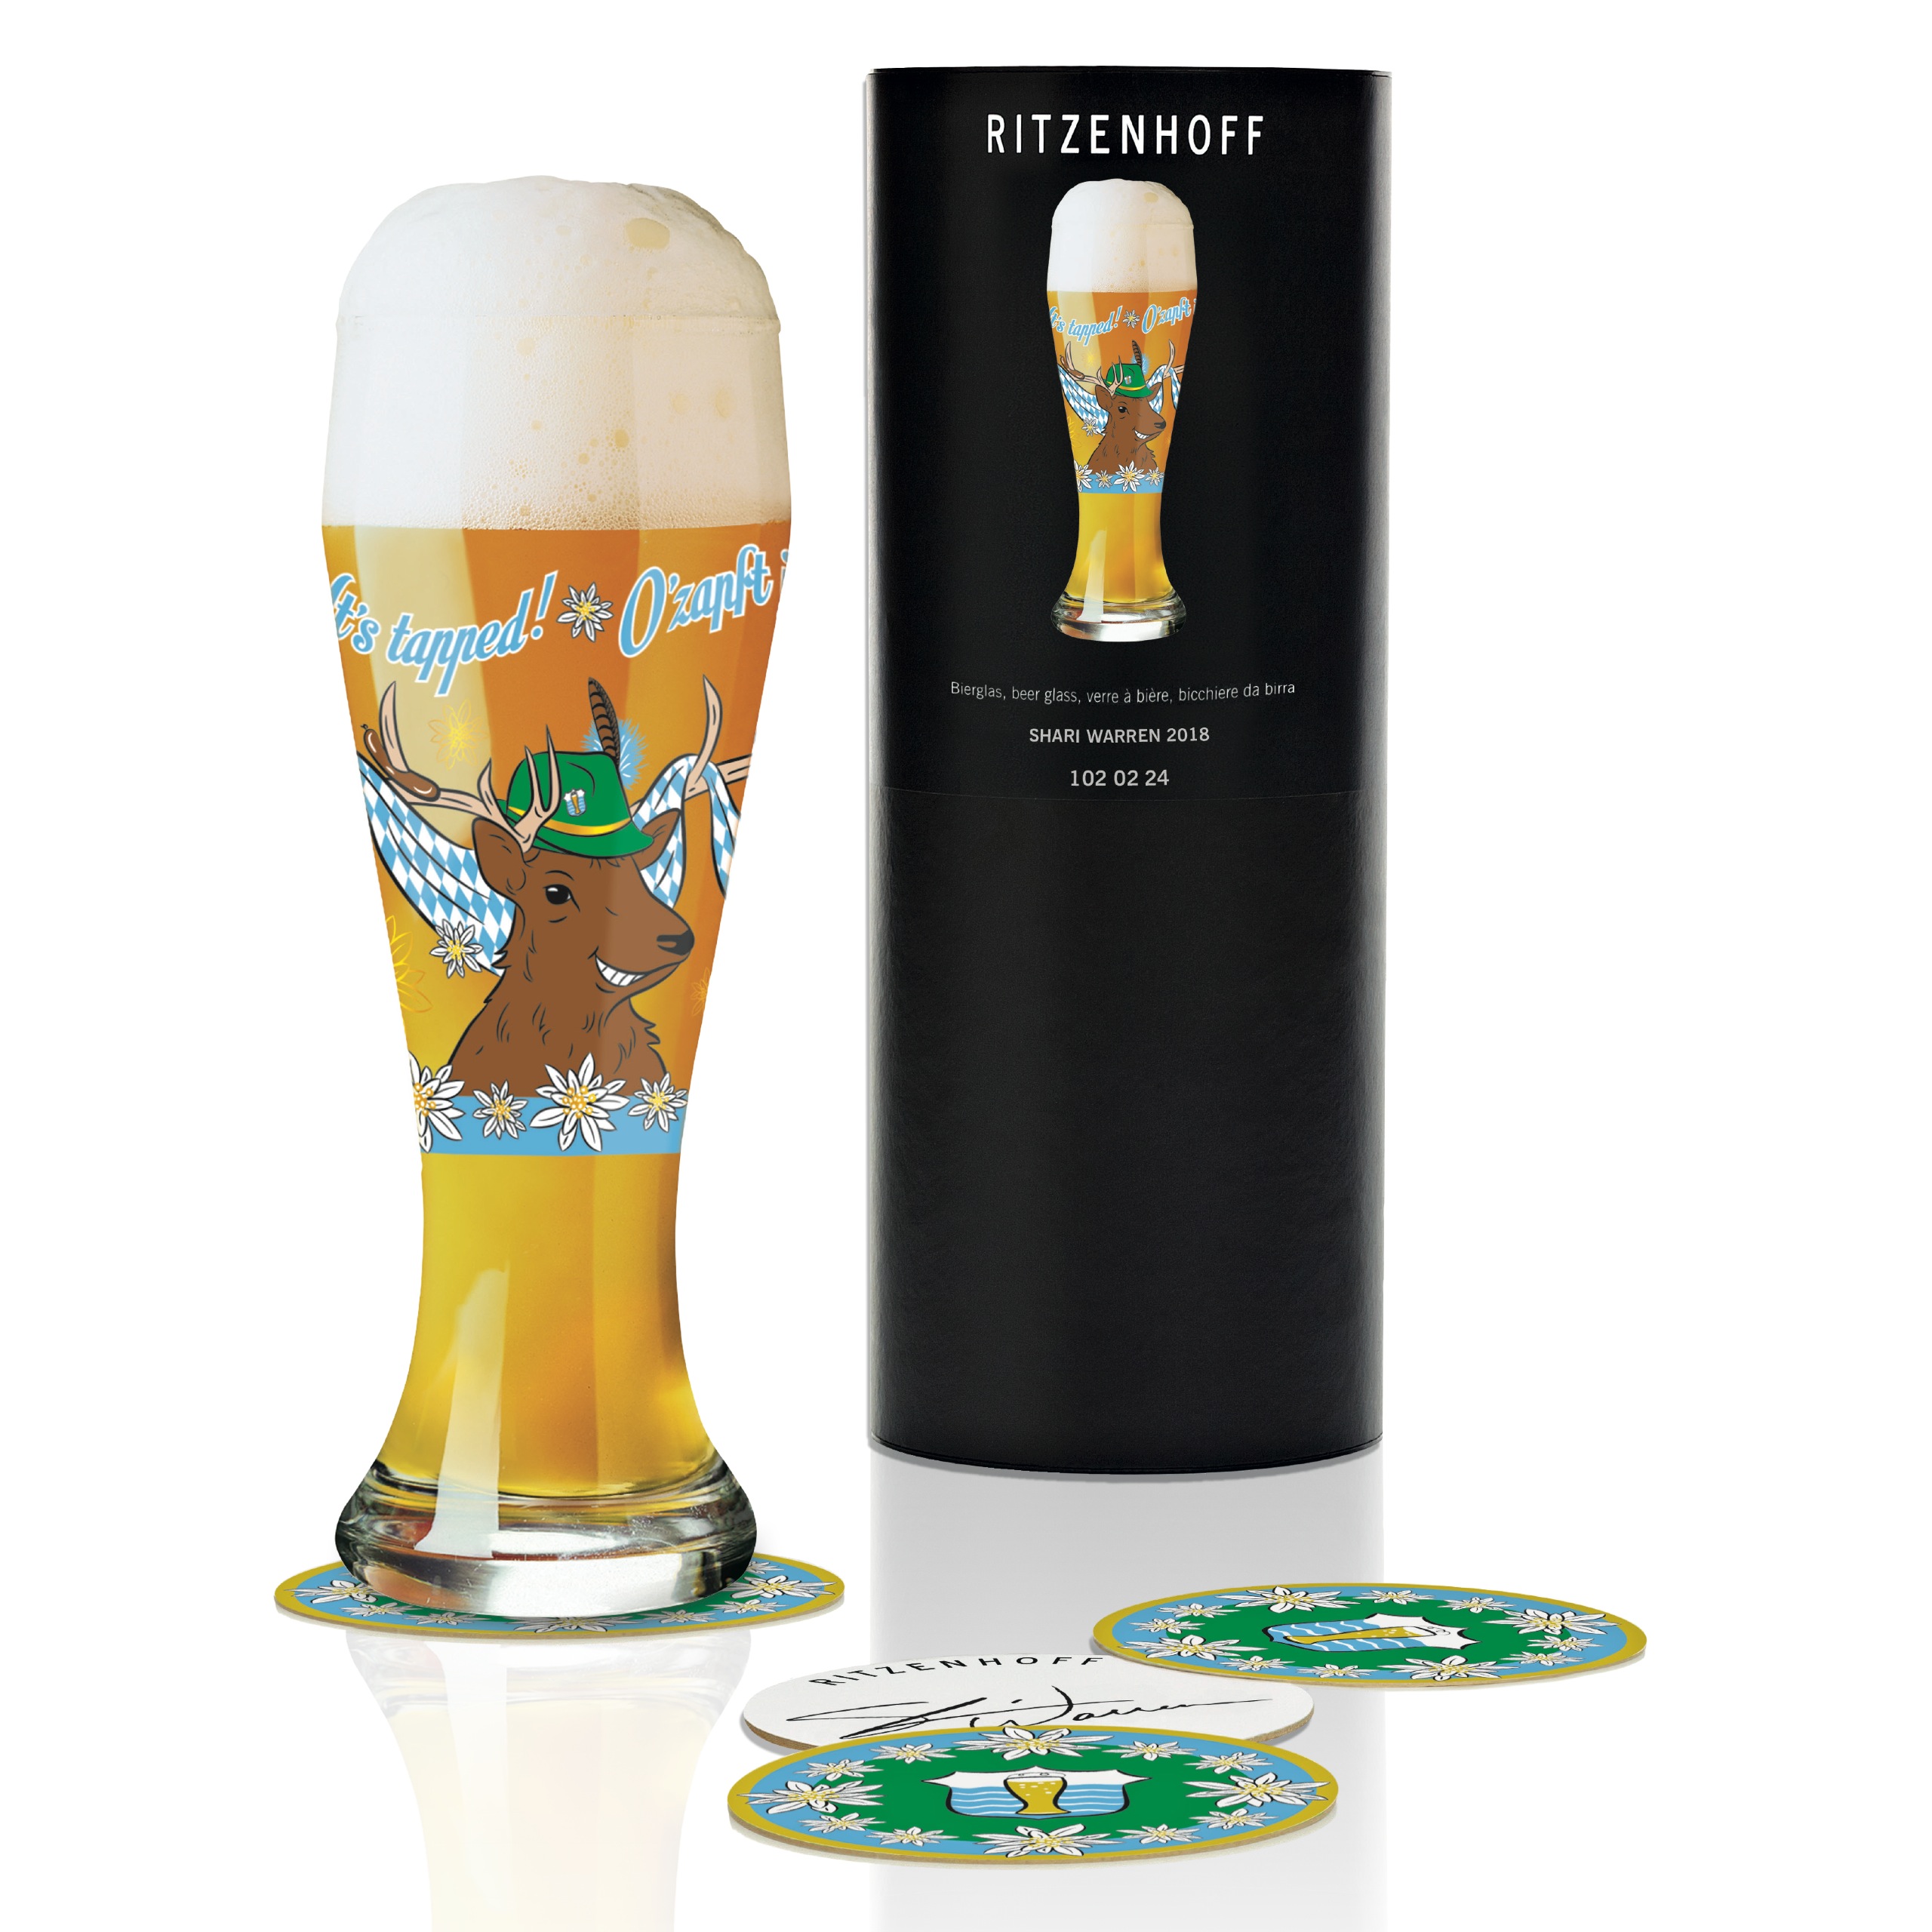 Ritzenhoff Wheat Beer beer glass by S. Warren 2018 – Craft Box Direct